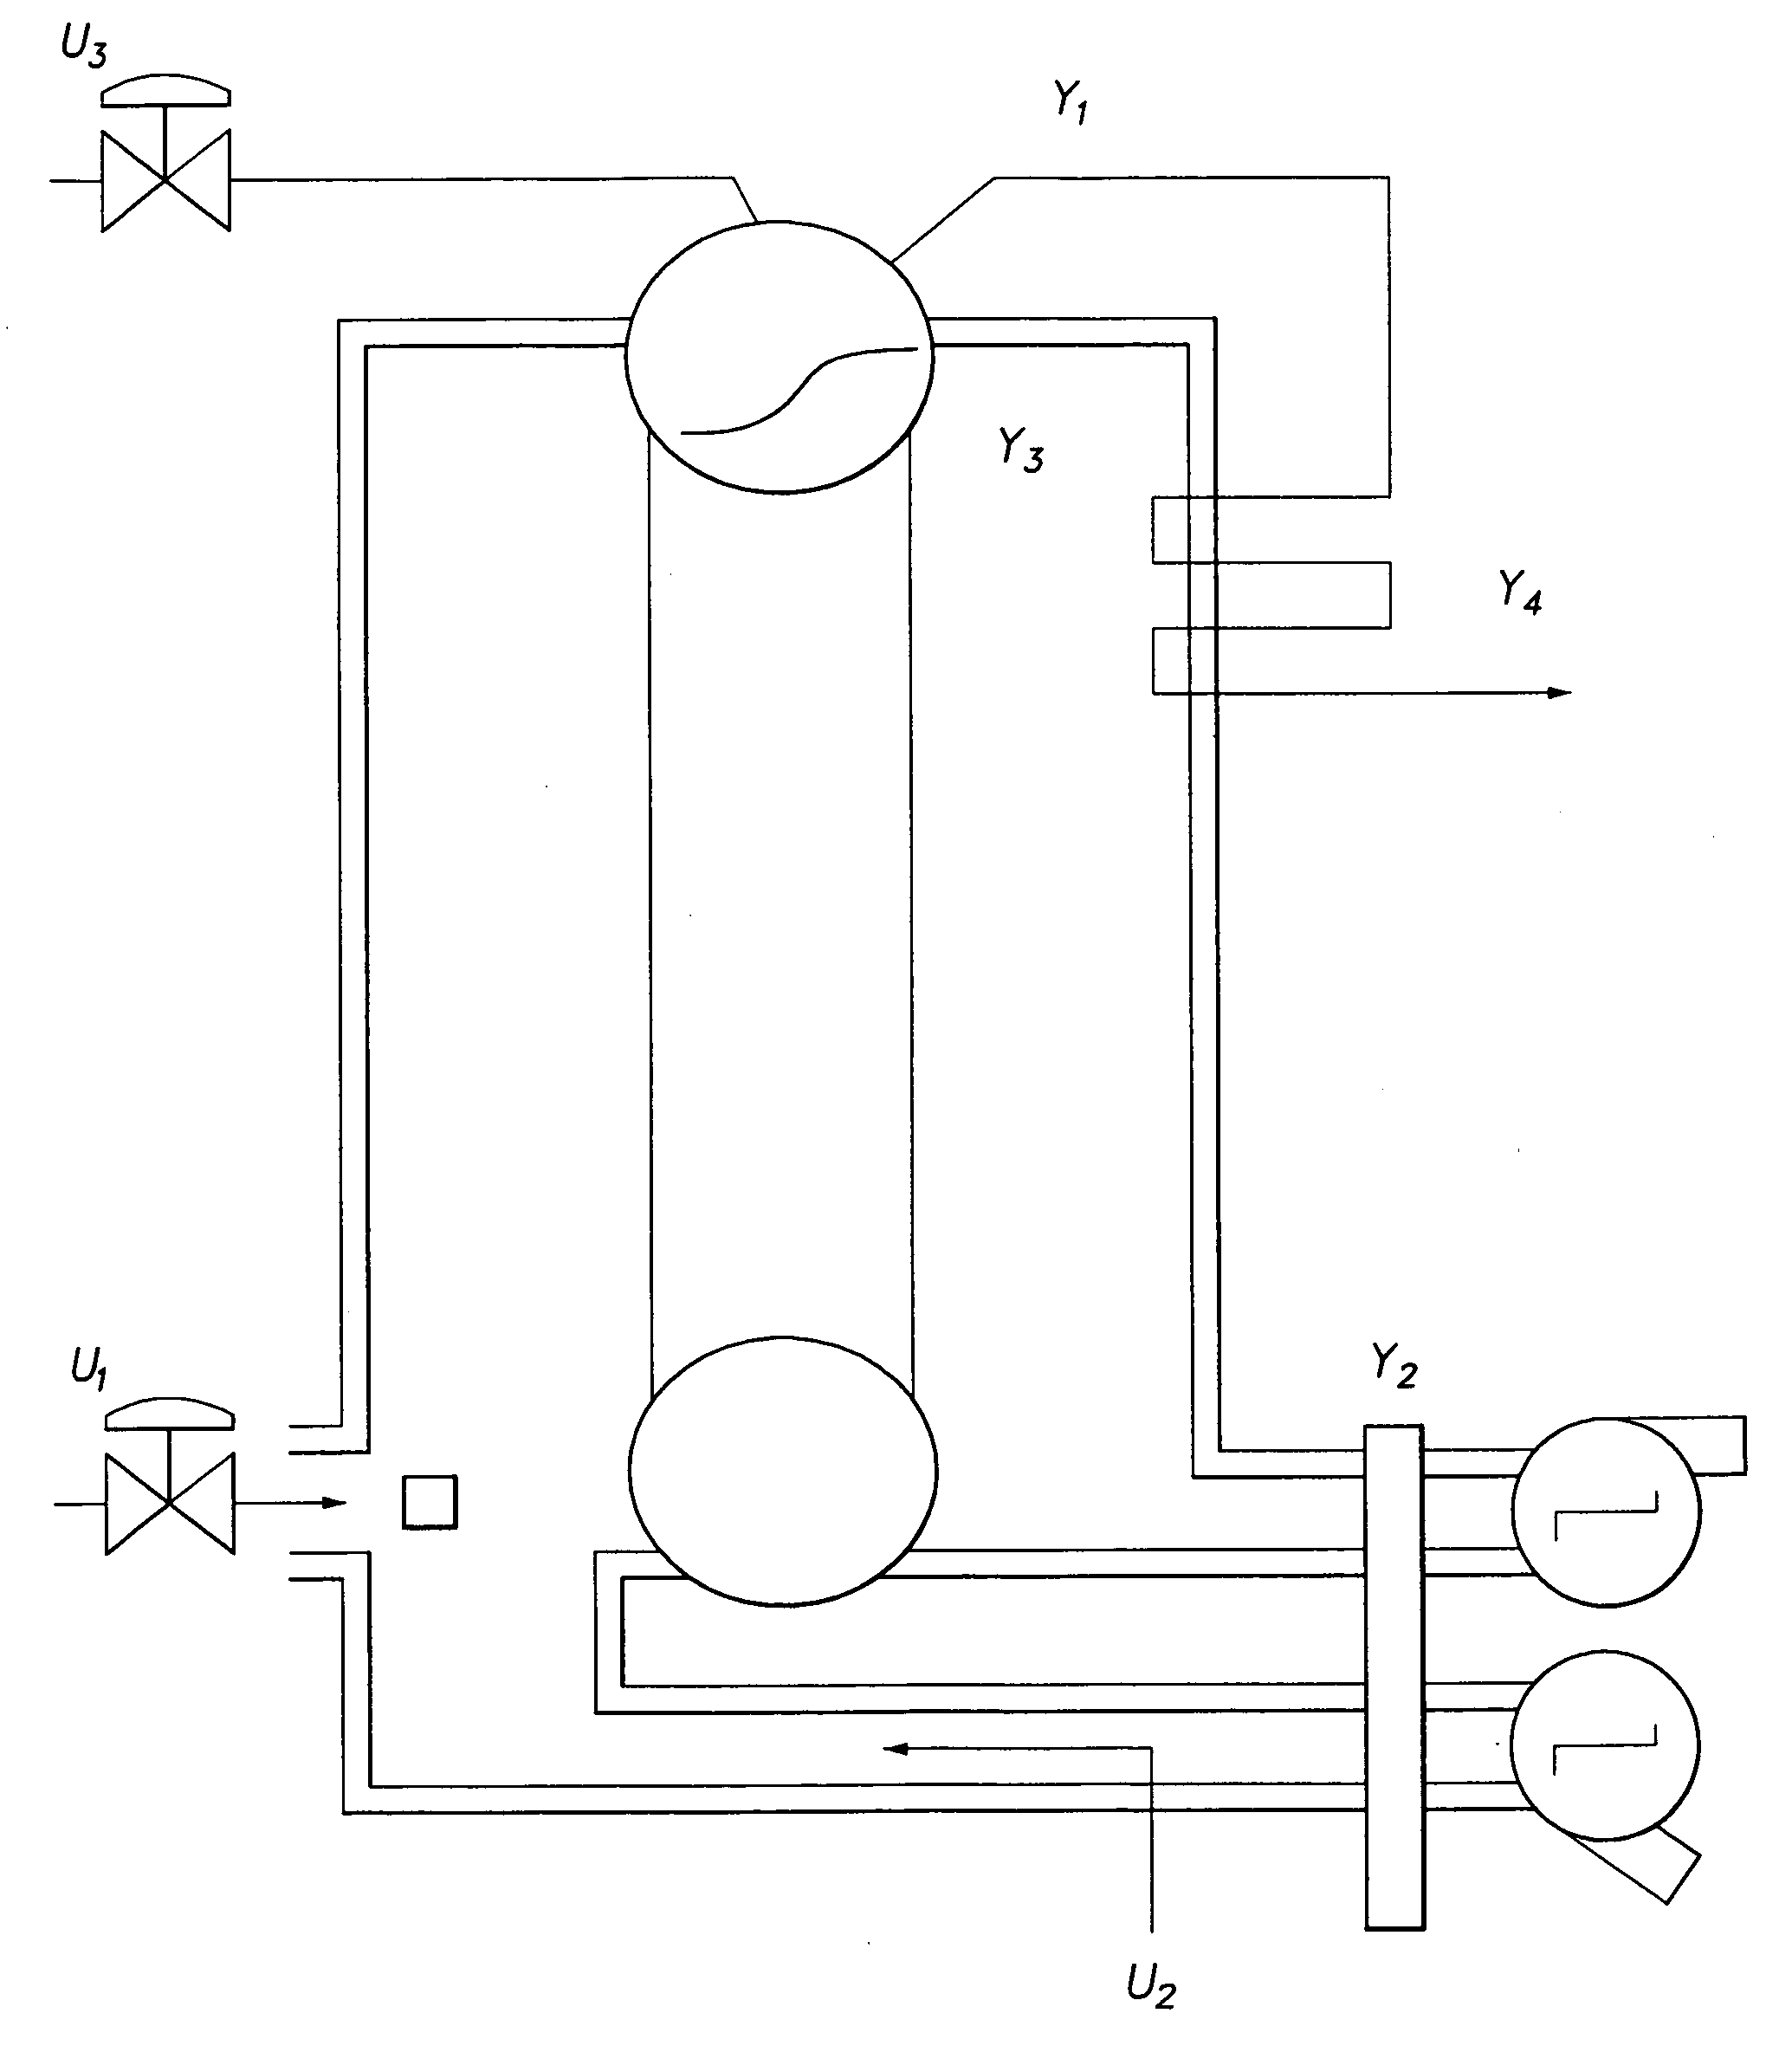 Method for hammerstein modeling of steam generator plant